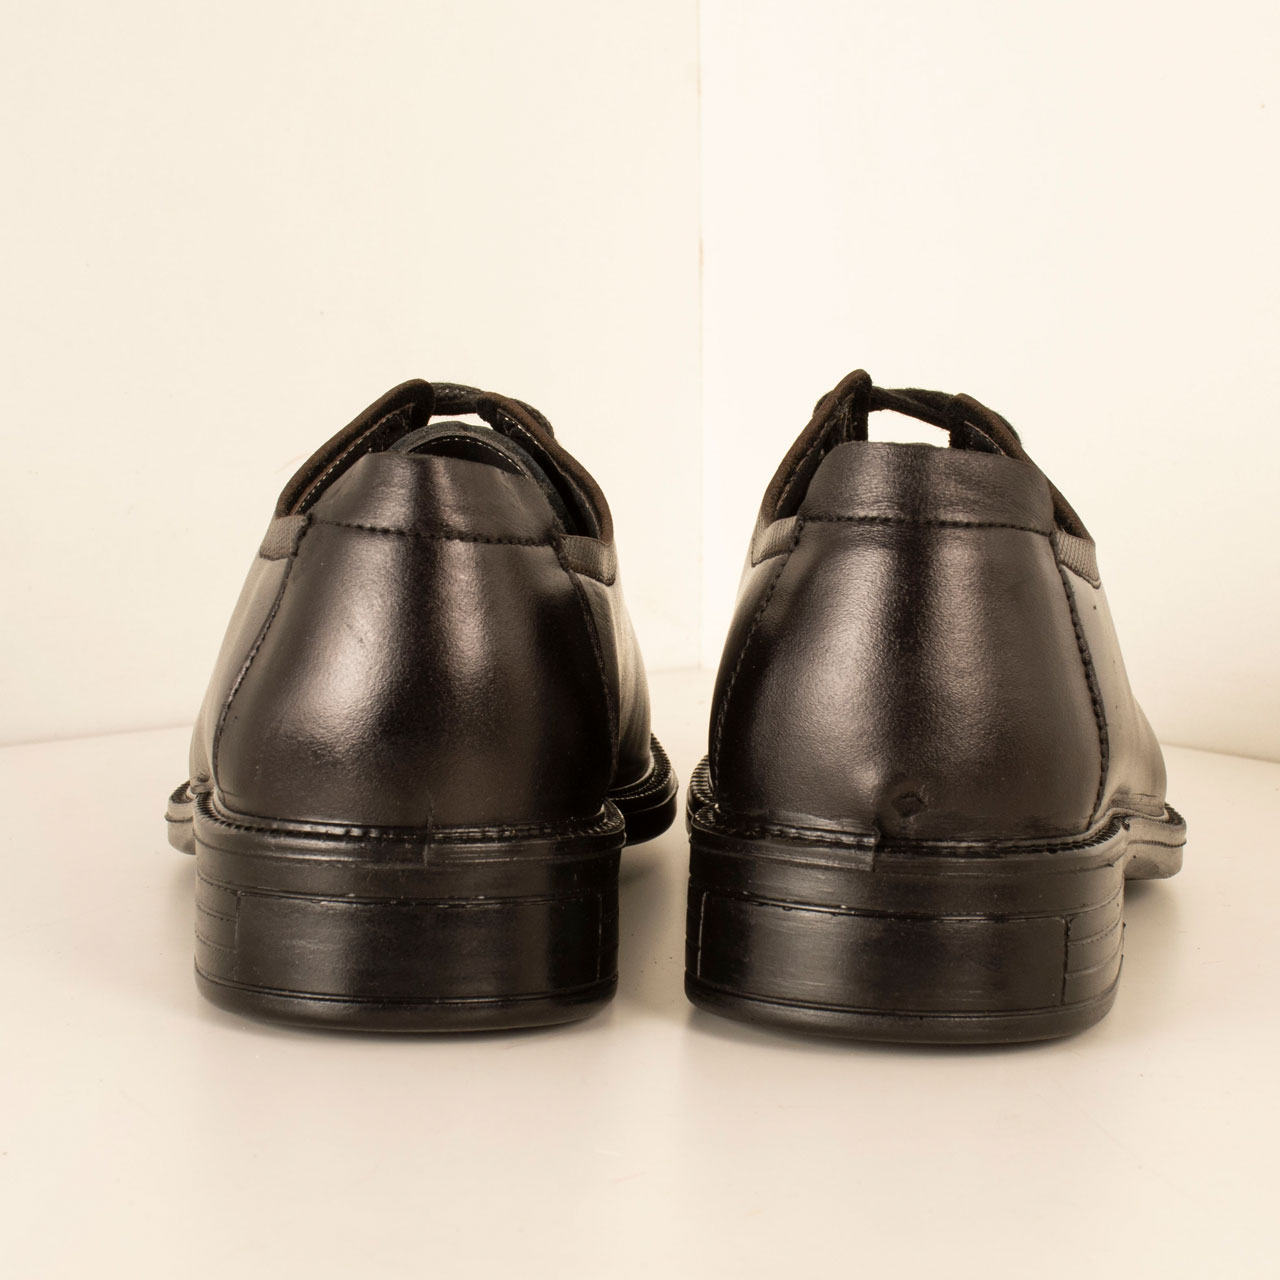 PARINECHARM leather men's shoes , SHO190 Model 